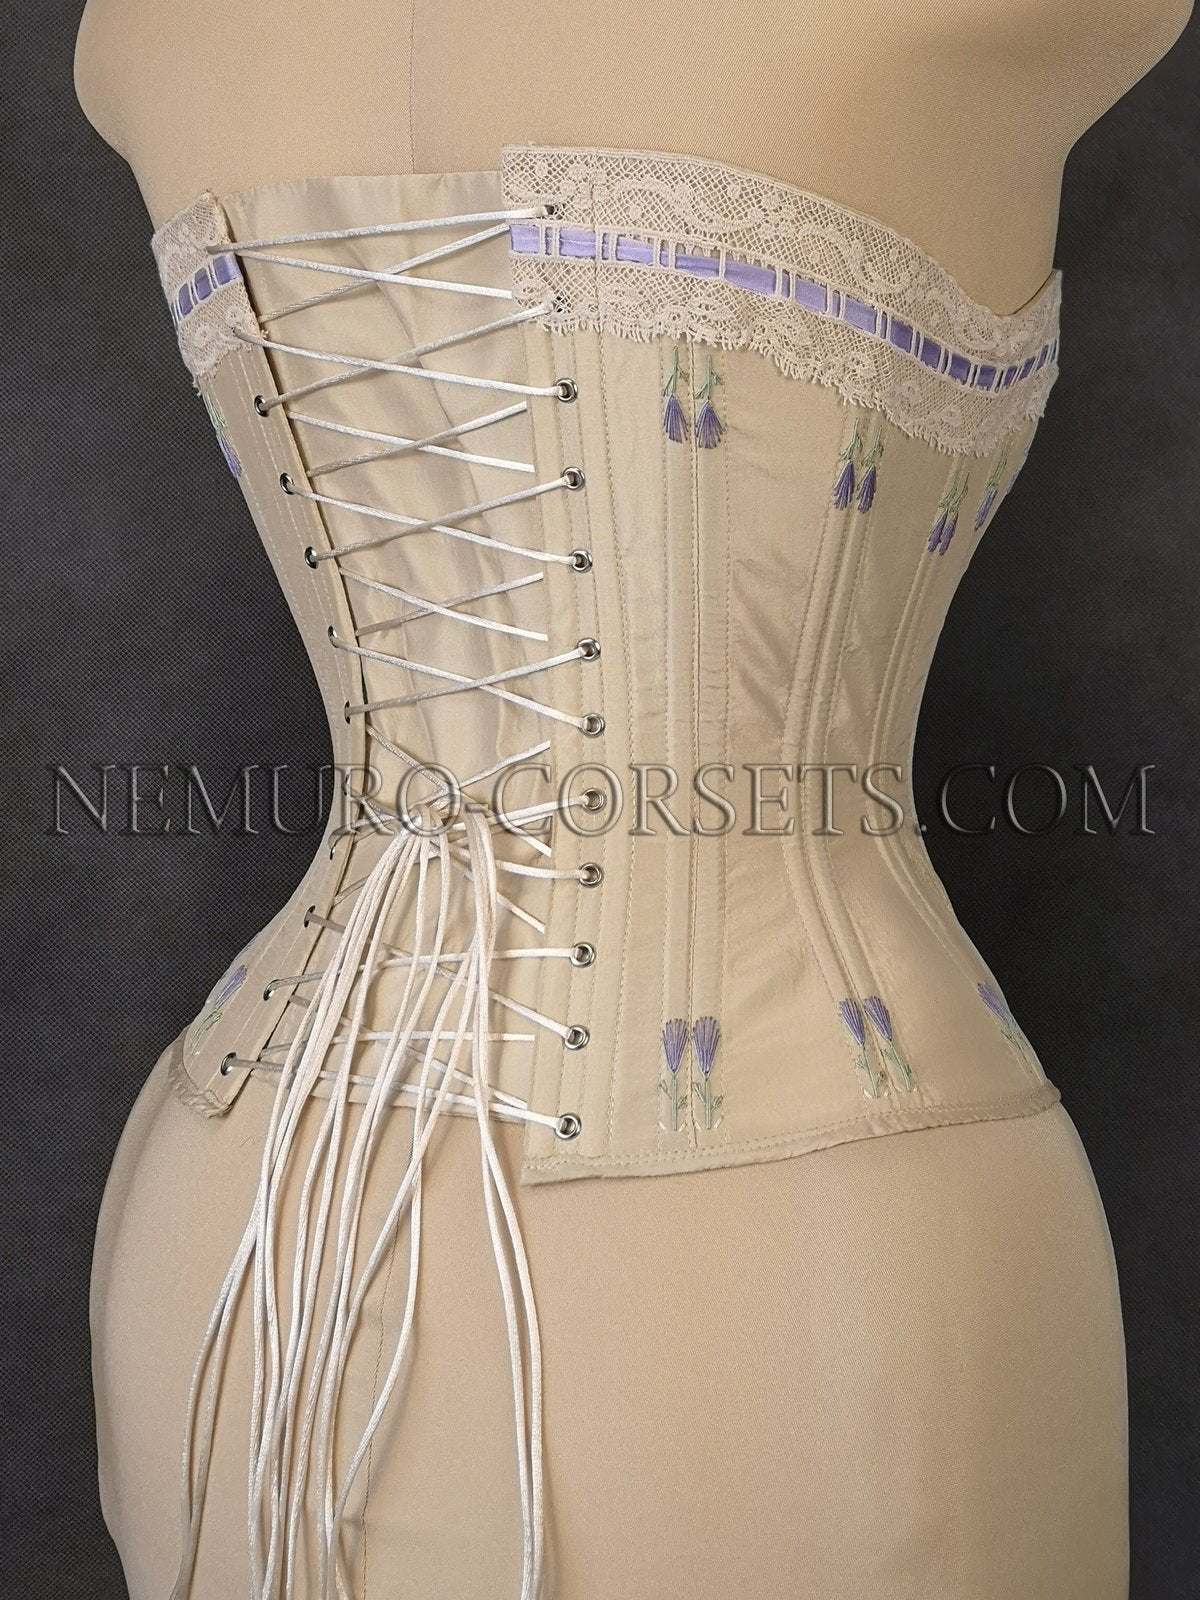 https://nemuro-corsets.com/cdn/shop/products/IMG_20200819_165100-2_1024x1024@2x.jpg?v=1629789509